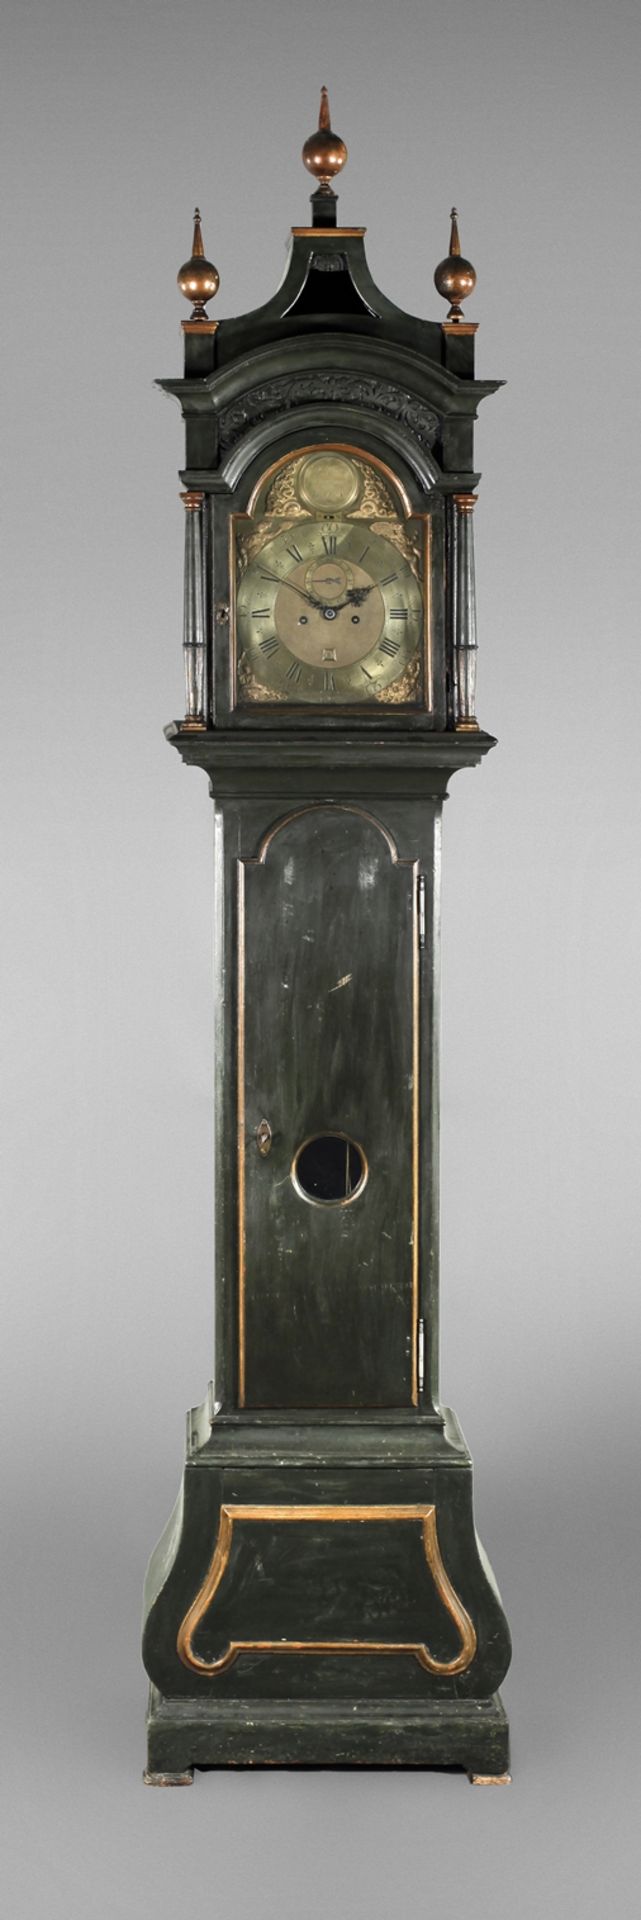 Standing clock William Jourdain London